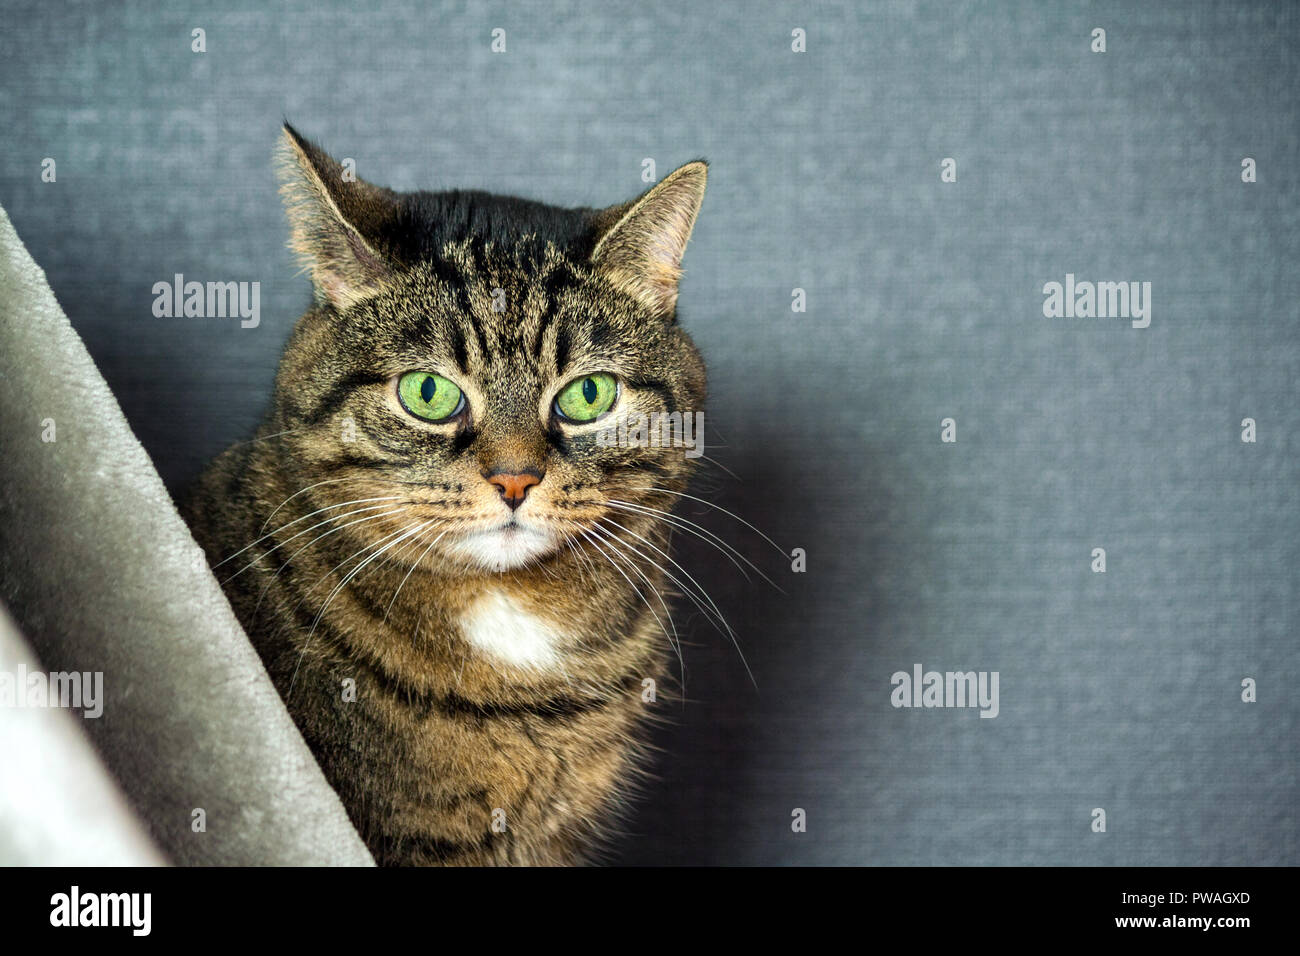 Mongrel striped cat, grasso guance, close-up verticale, si siede dietro un velo di colore grigio, sullo sfondo uno sfondo blu scuro, verde enorme gli occhi a mandorla, Foto Stock